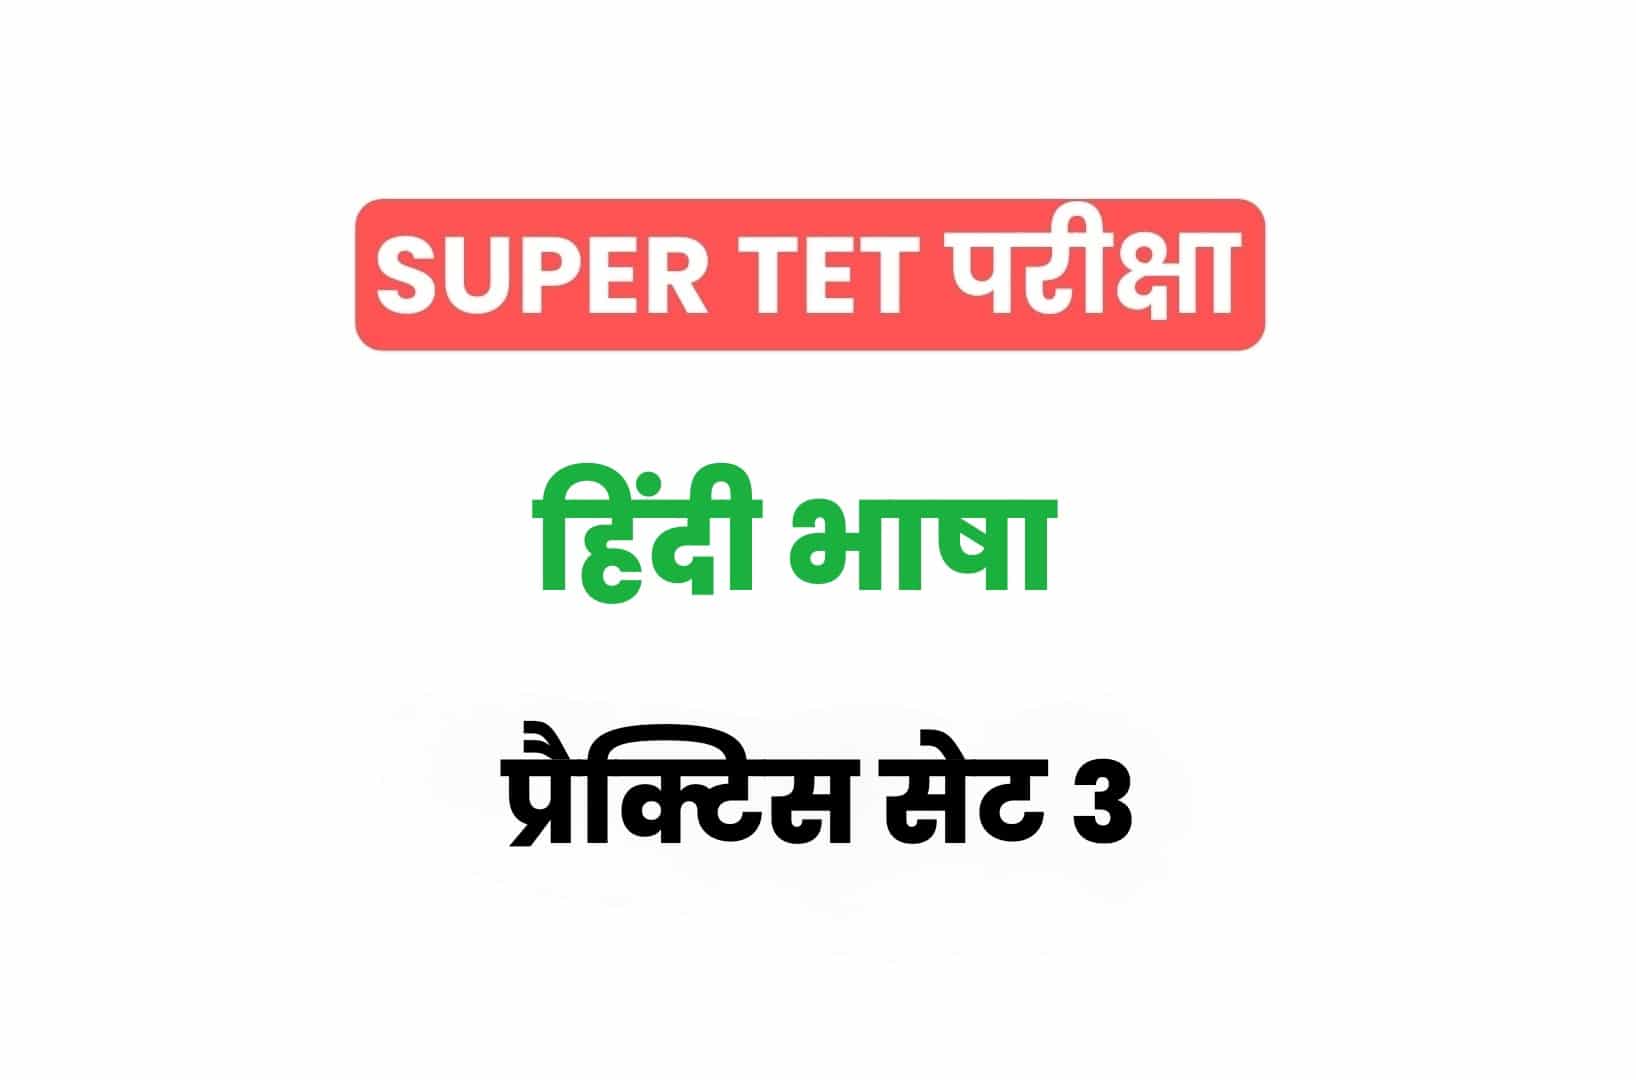 SUPER TET 2022 हिंदी प्रैक्टिस सेट 3: हिंदी के 15 ऐसे महत्वपूर्ण प्रश्नों का संग्रह जो आगामी सुपर टेट परीक्षा में पूछे जा सकते हैं, अवश्य देखें